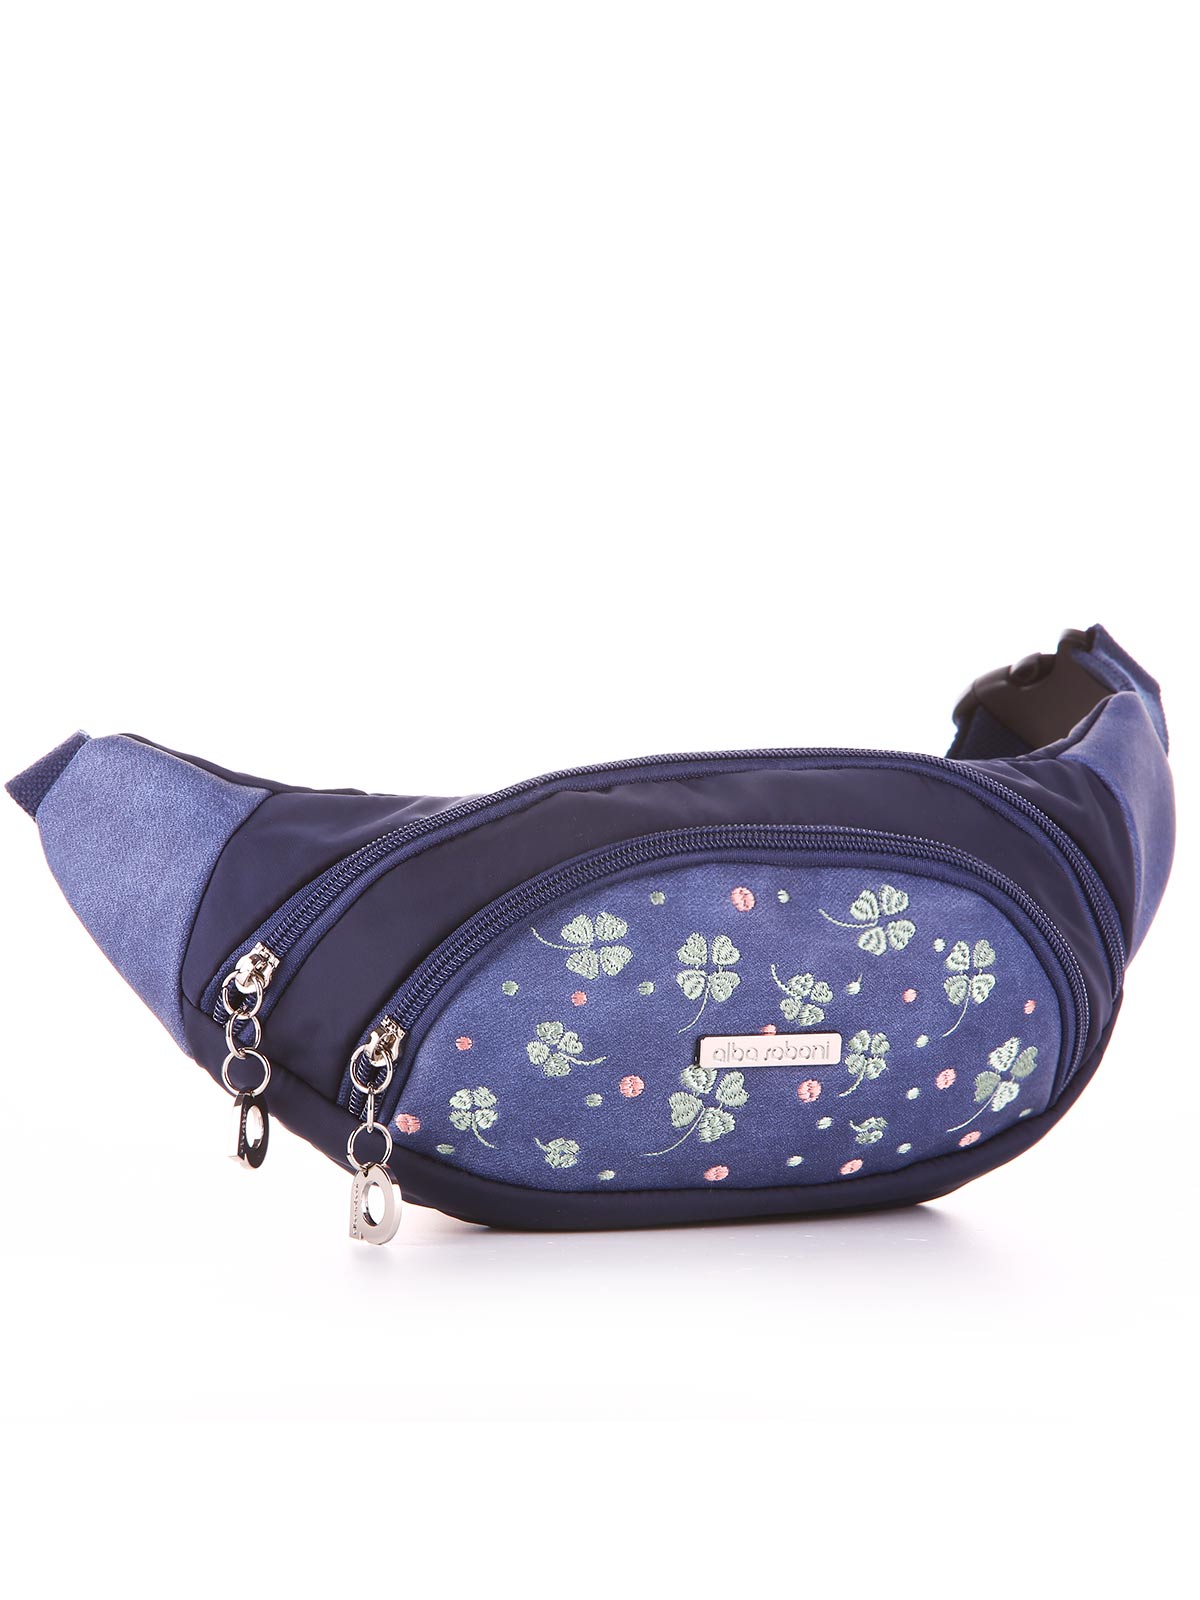 Модна сумка на пояс з вышивкою, модель 183882 синій. Зображення товару, вид ззаду.